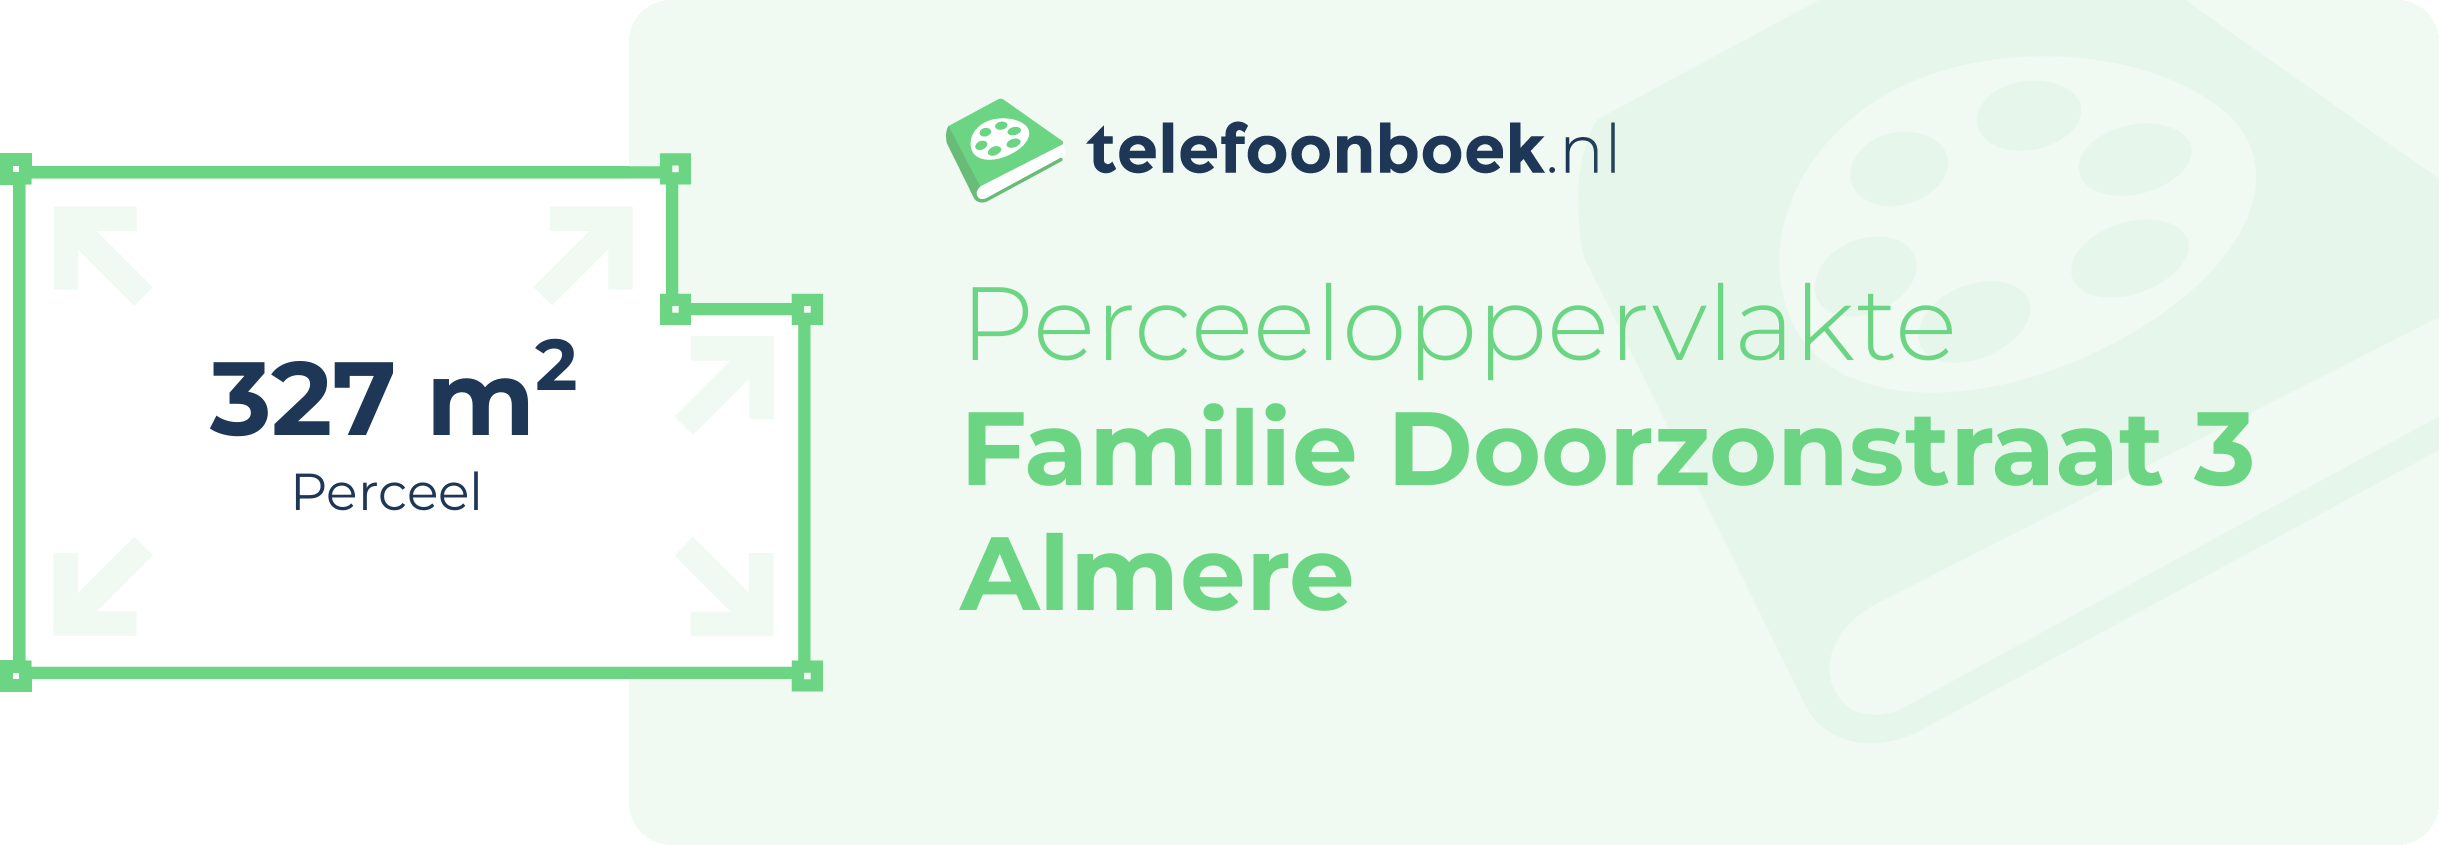 Perceeloppervlakte Familie Doorzonstraat 3 Almere